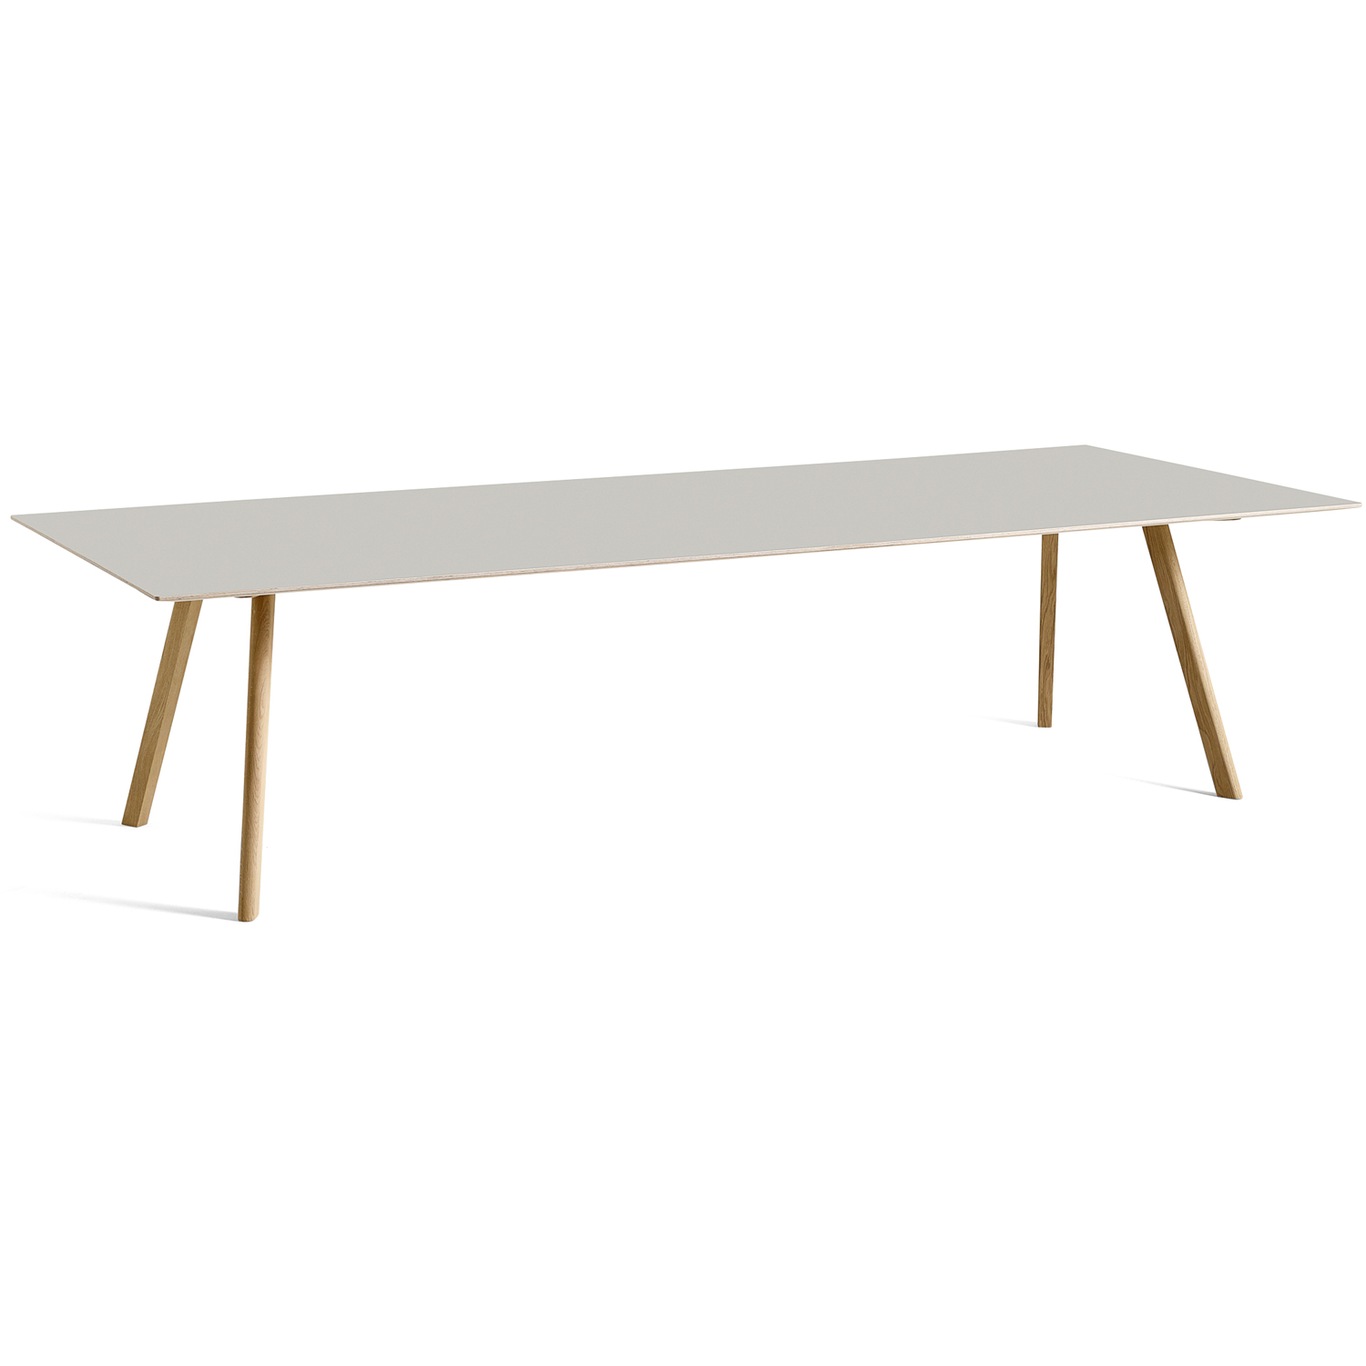 CPH 30 Pöytä 300x120 cm, Vesipohjaisella Lakalla Käsitelty Tammi / Off-white Linoleumi